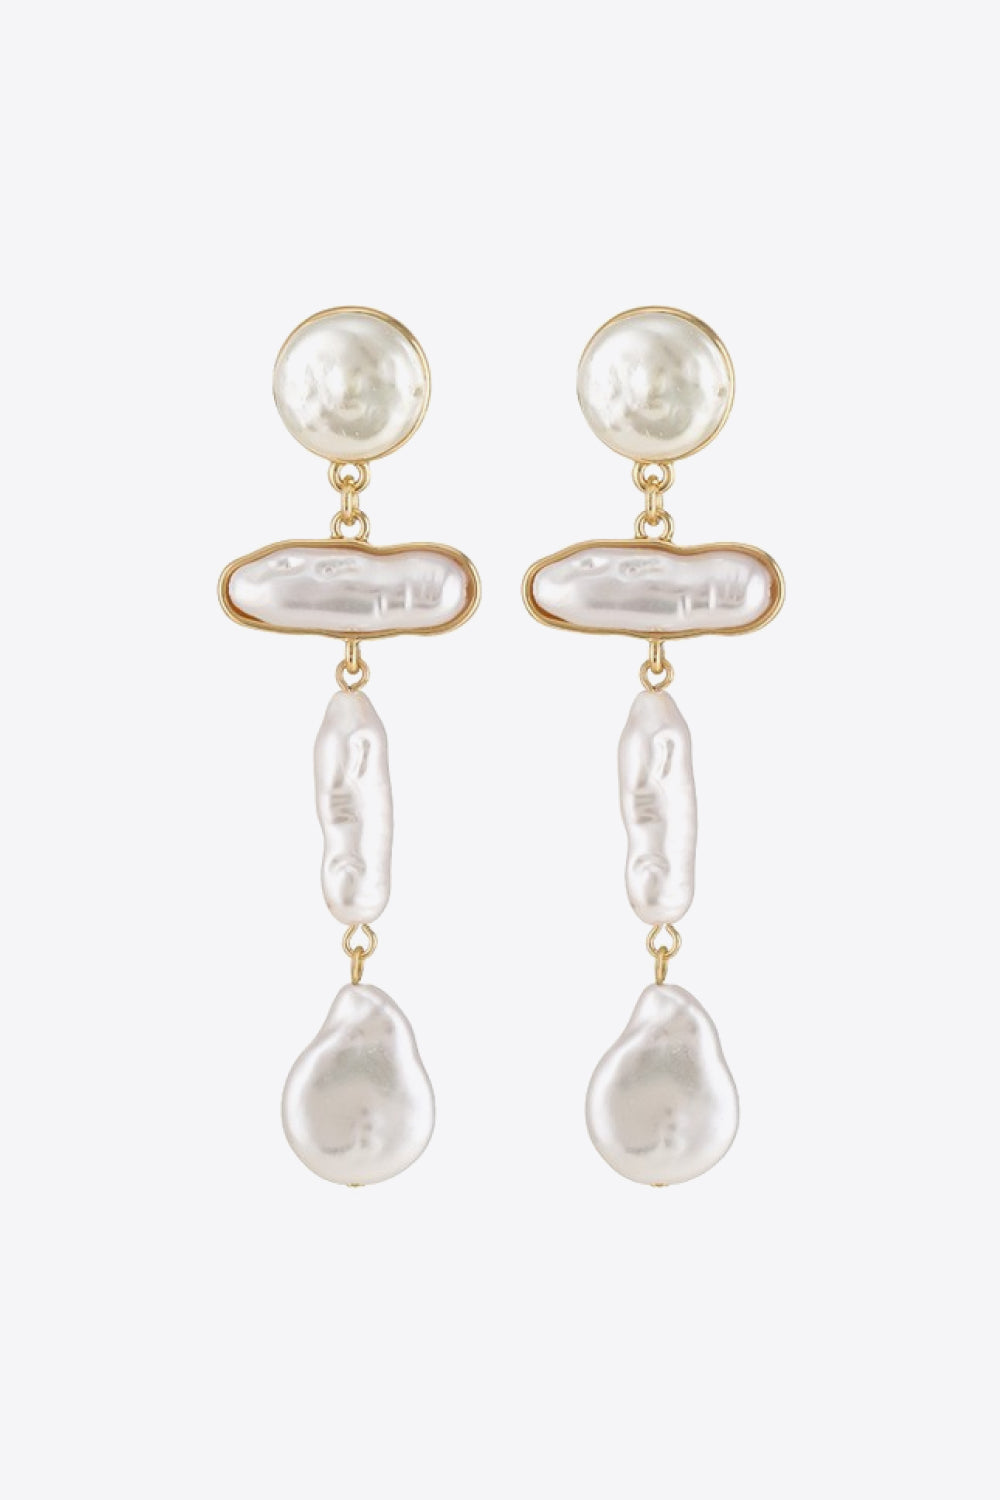 Pearl Zinc Alloy Dangle Earrings - Earrings - FITGGINS